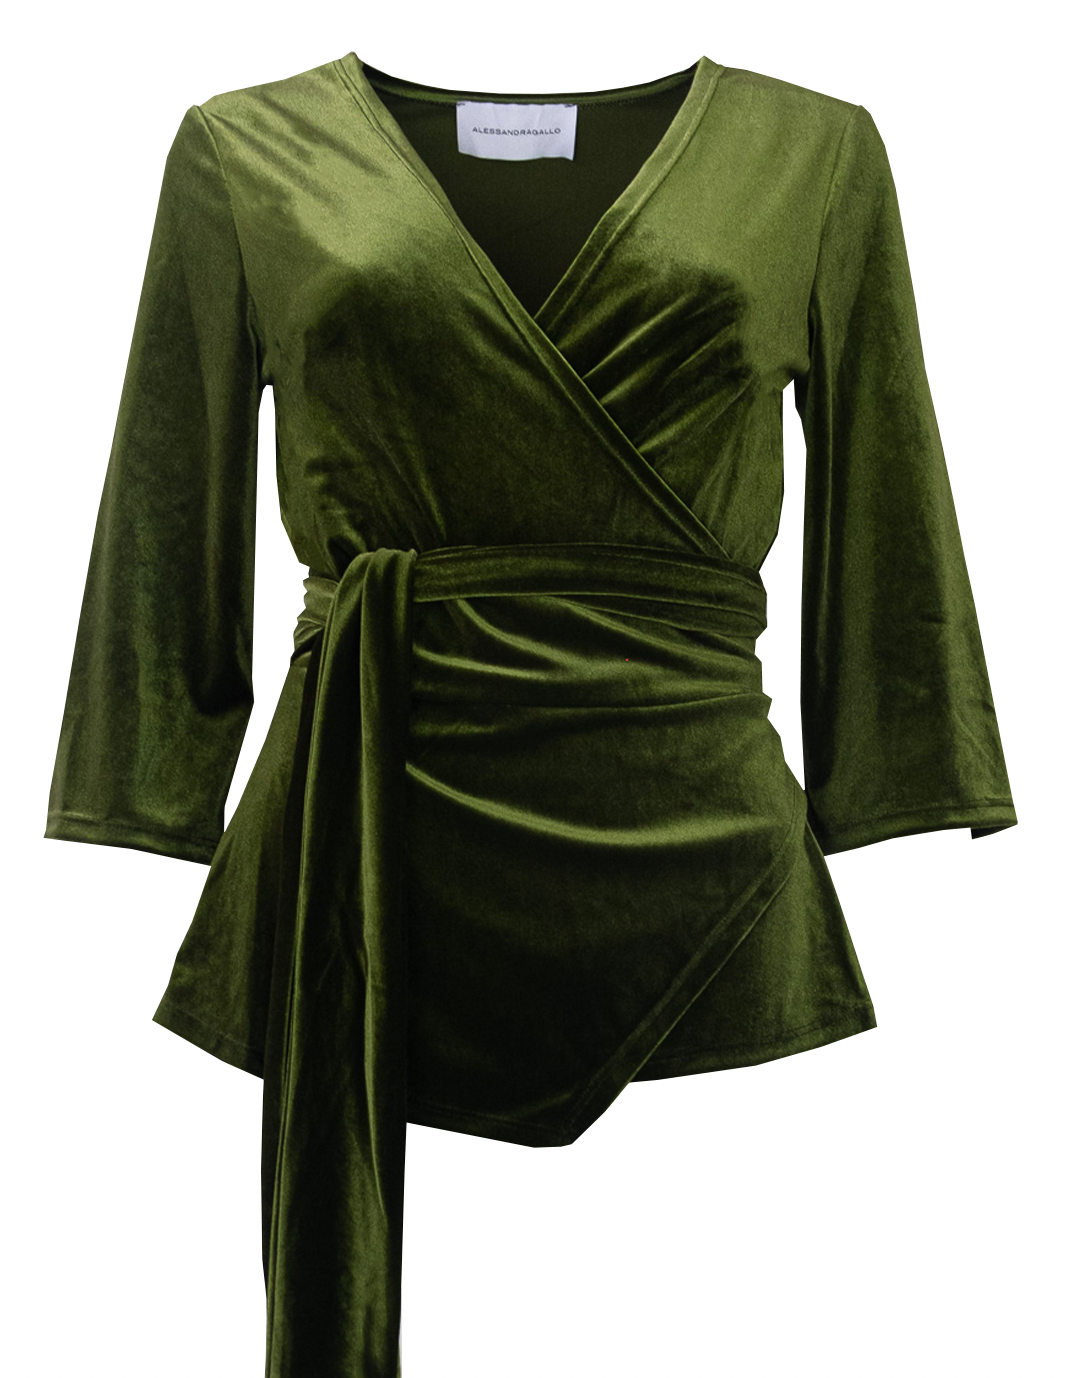 LEONORE - green chenille kimono blouse